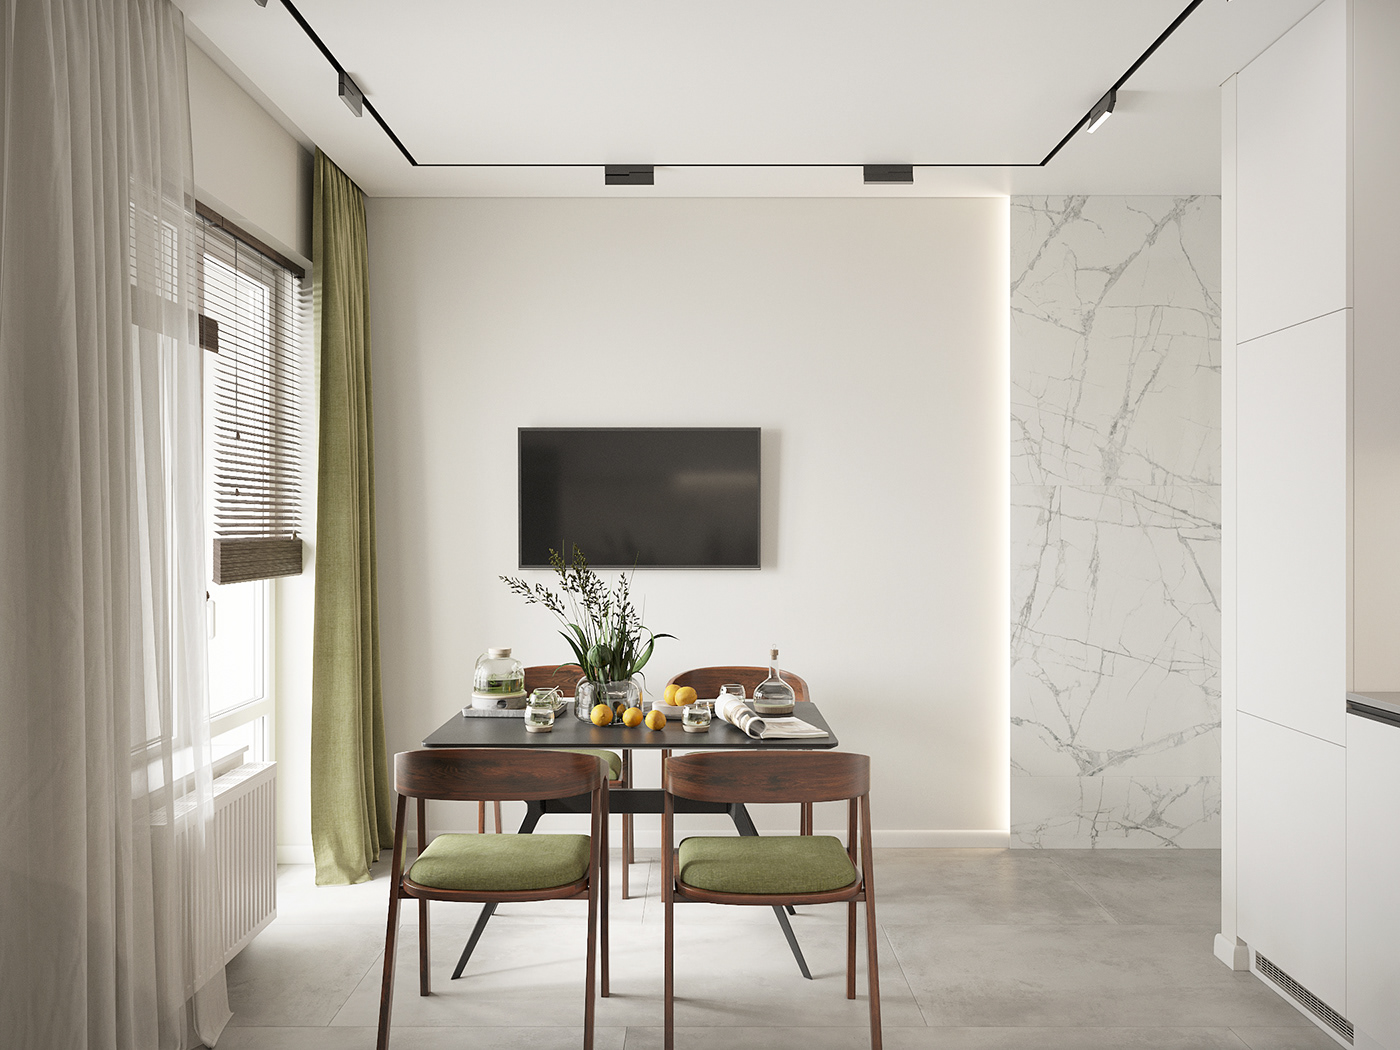 3D 3ds max architecture corona design Interior interior design  kitchen Render visualization